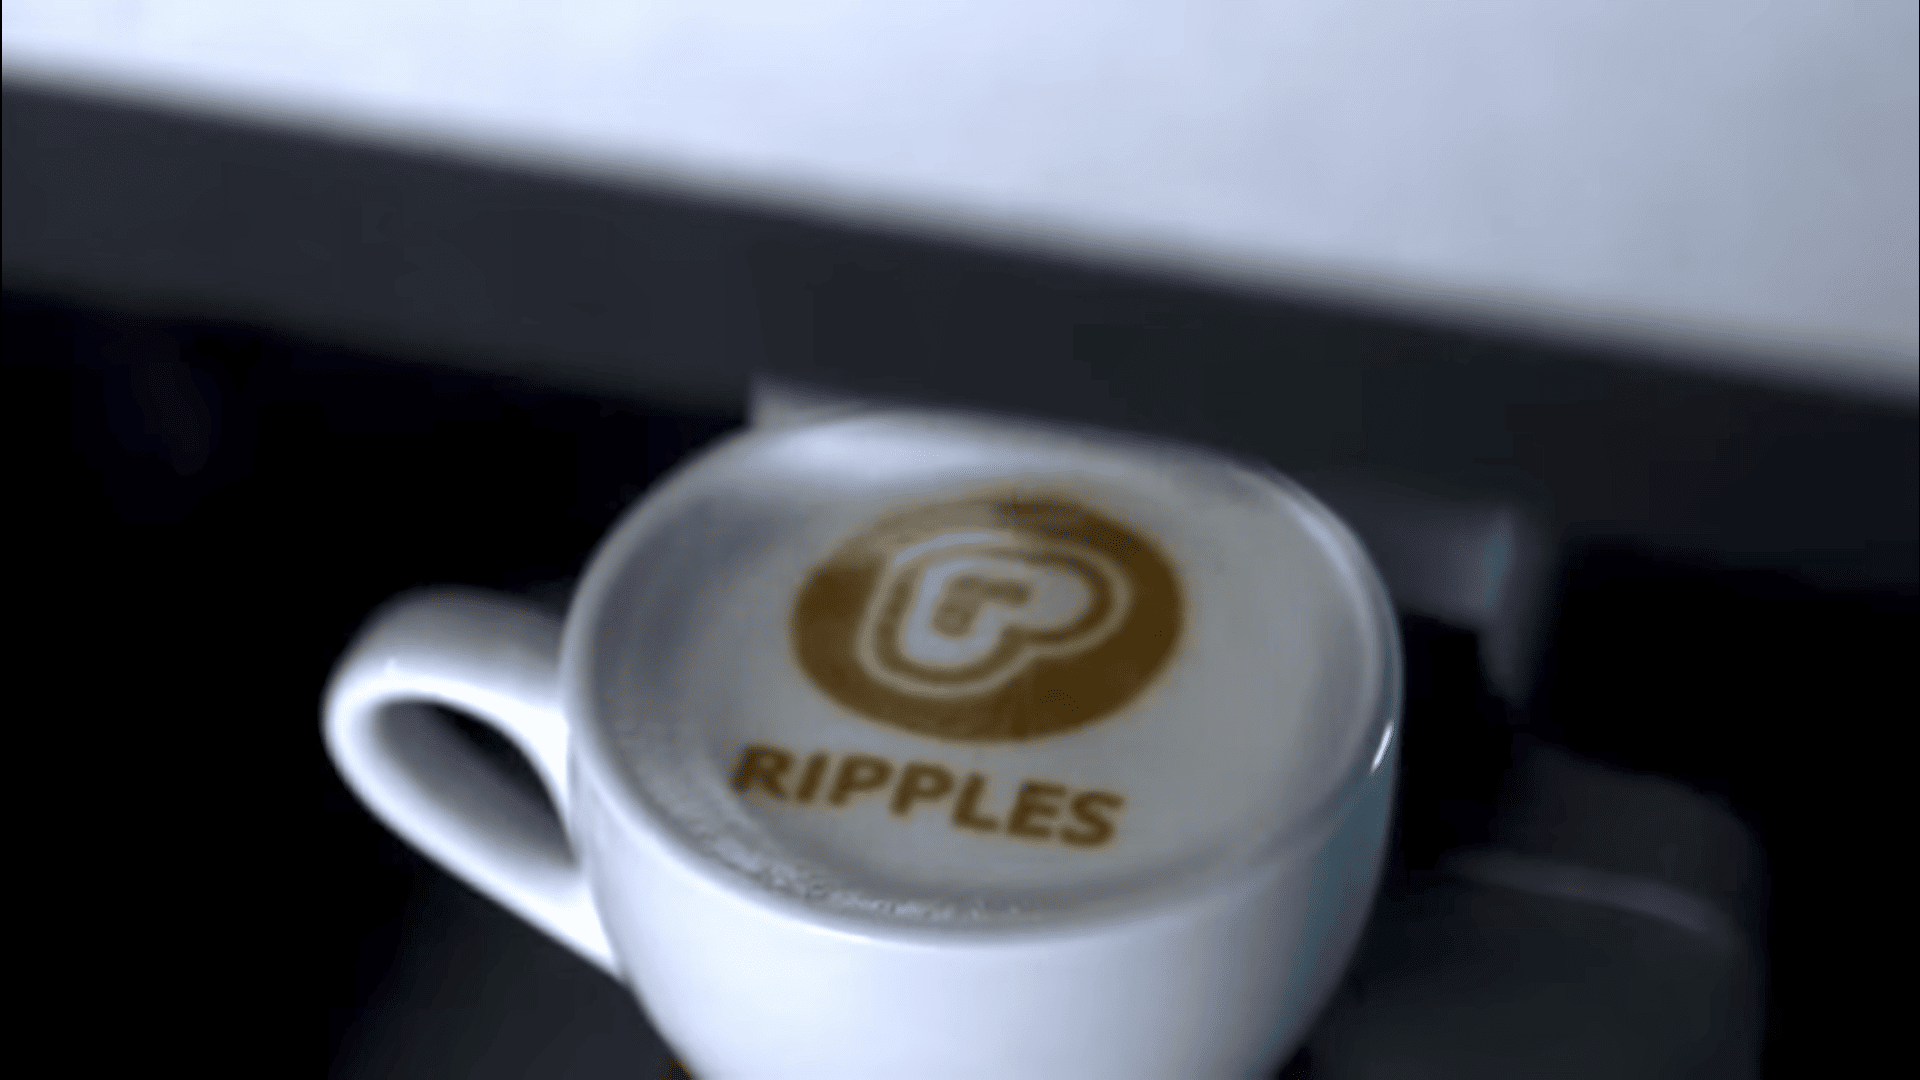 Selfie cafe ripple maker